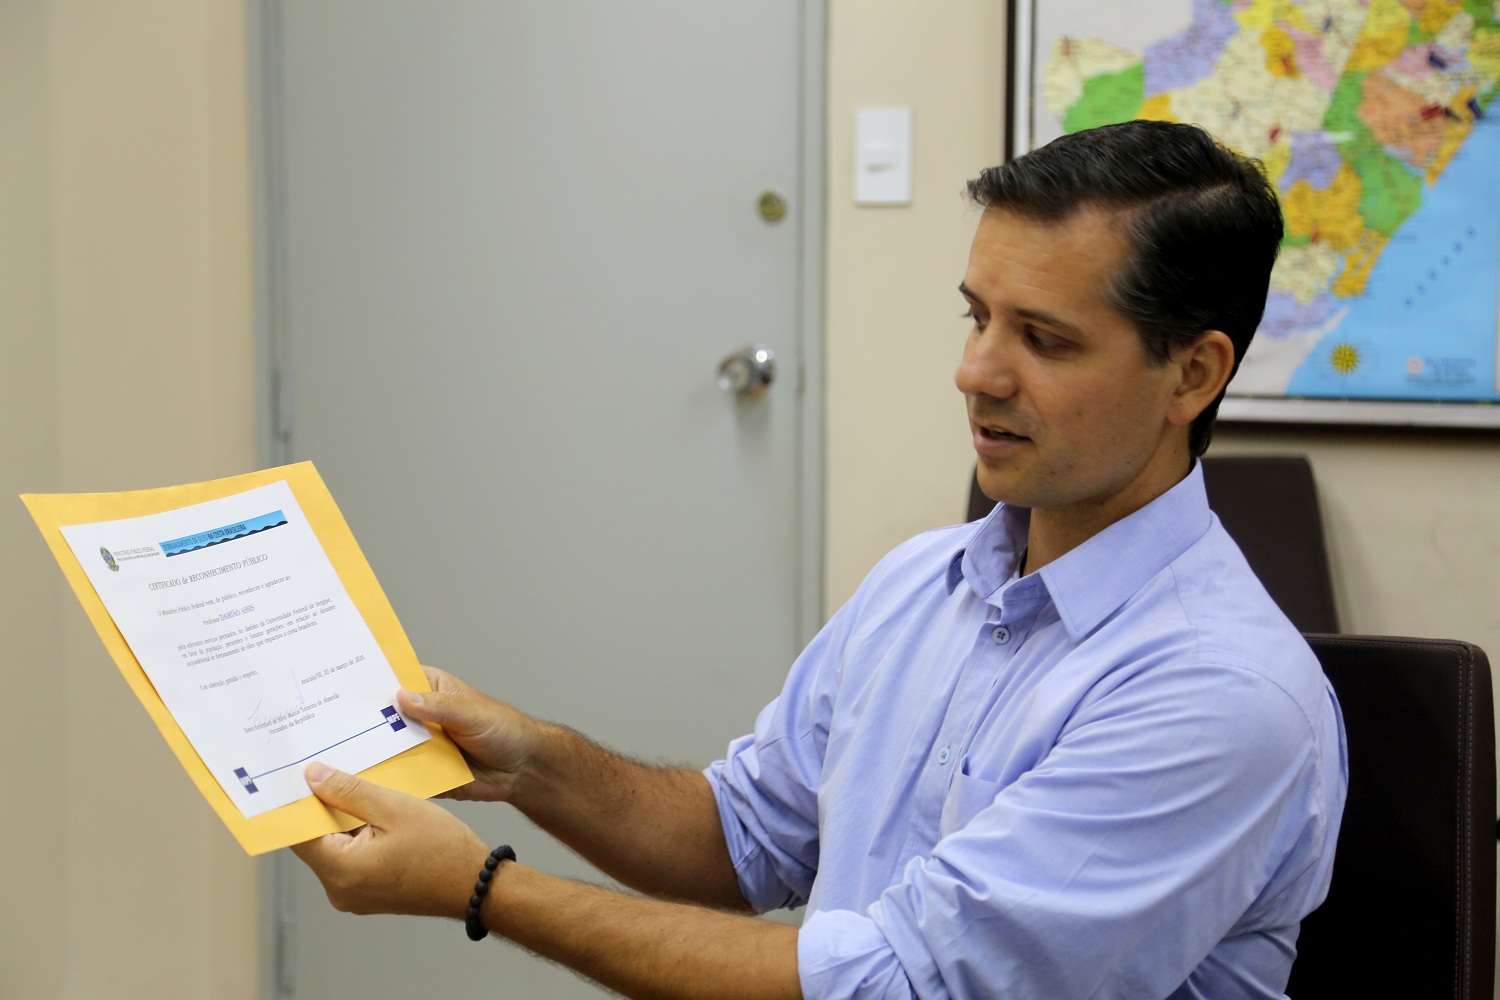 Procurador da República Ramiro Rockenbach entrega Certificado de Reconhecimento Público aos pesquisadores